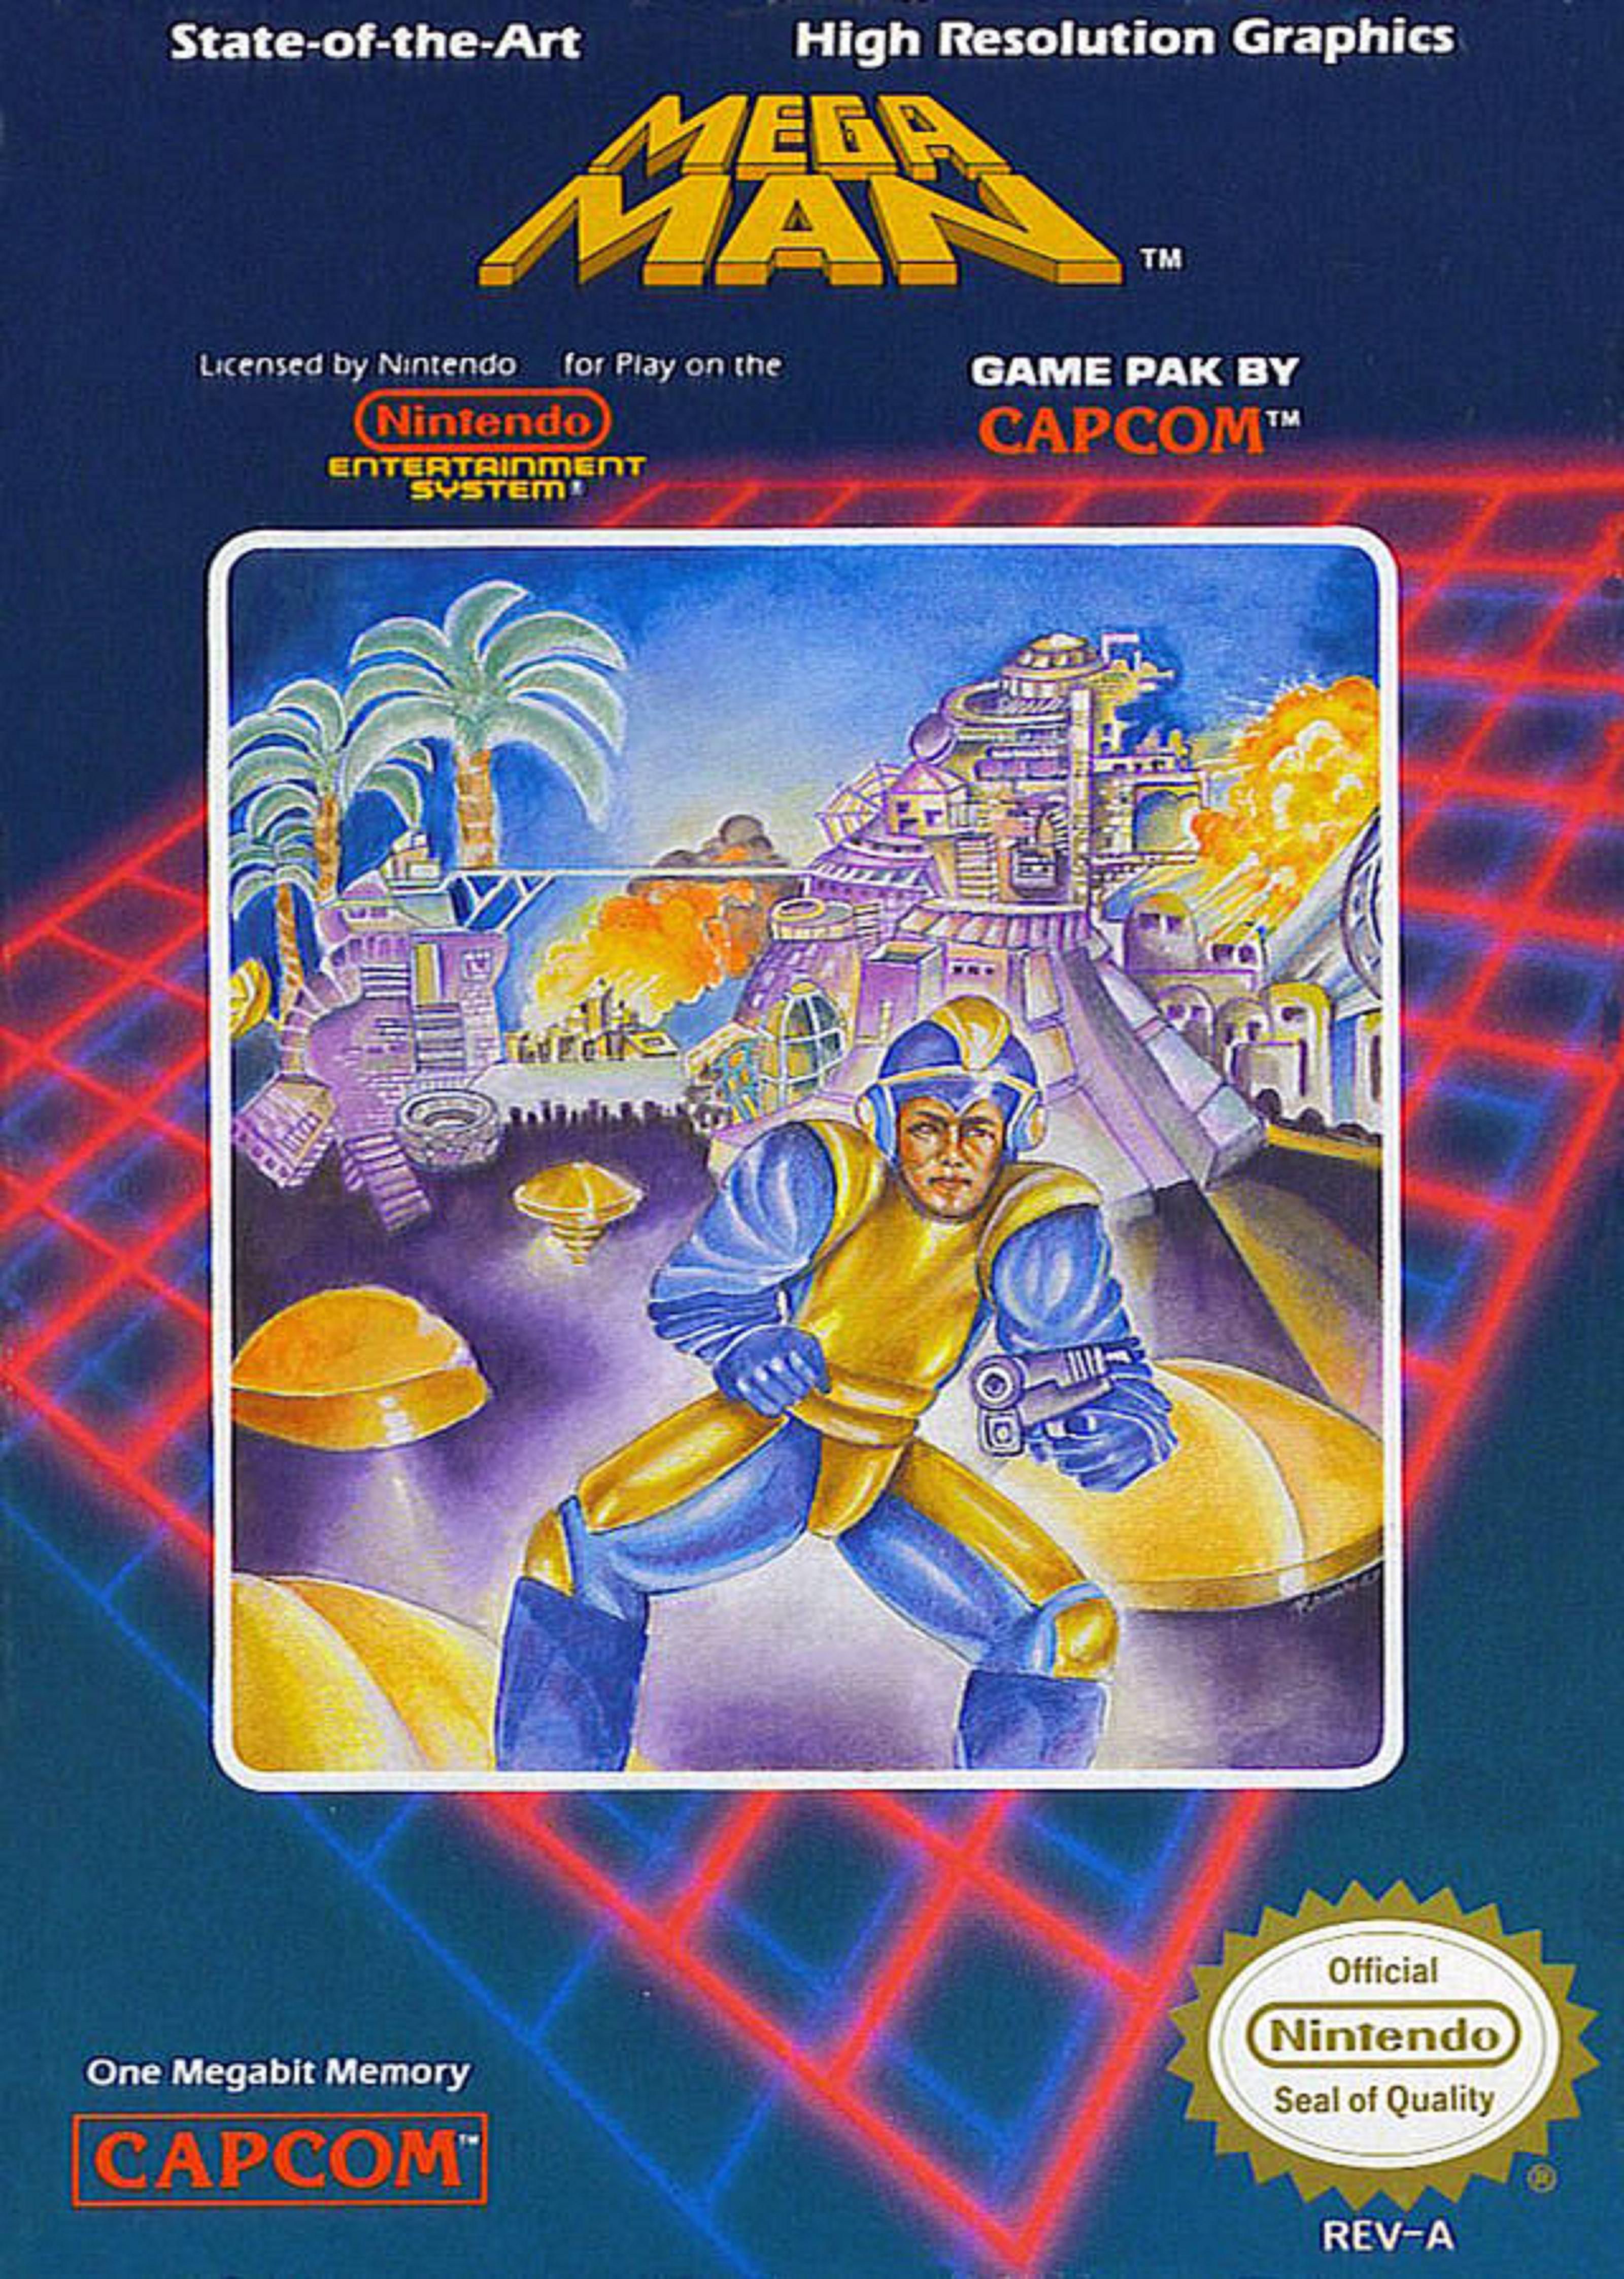 Arte da caixa do Mega Man, um homem de terno azul e amarelo segura uma arma na frente de uma cidade de ficção científica